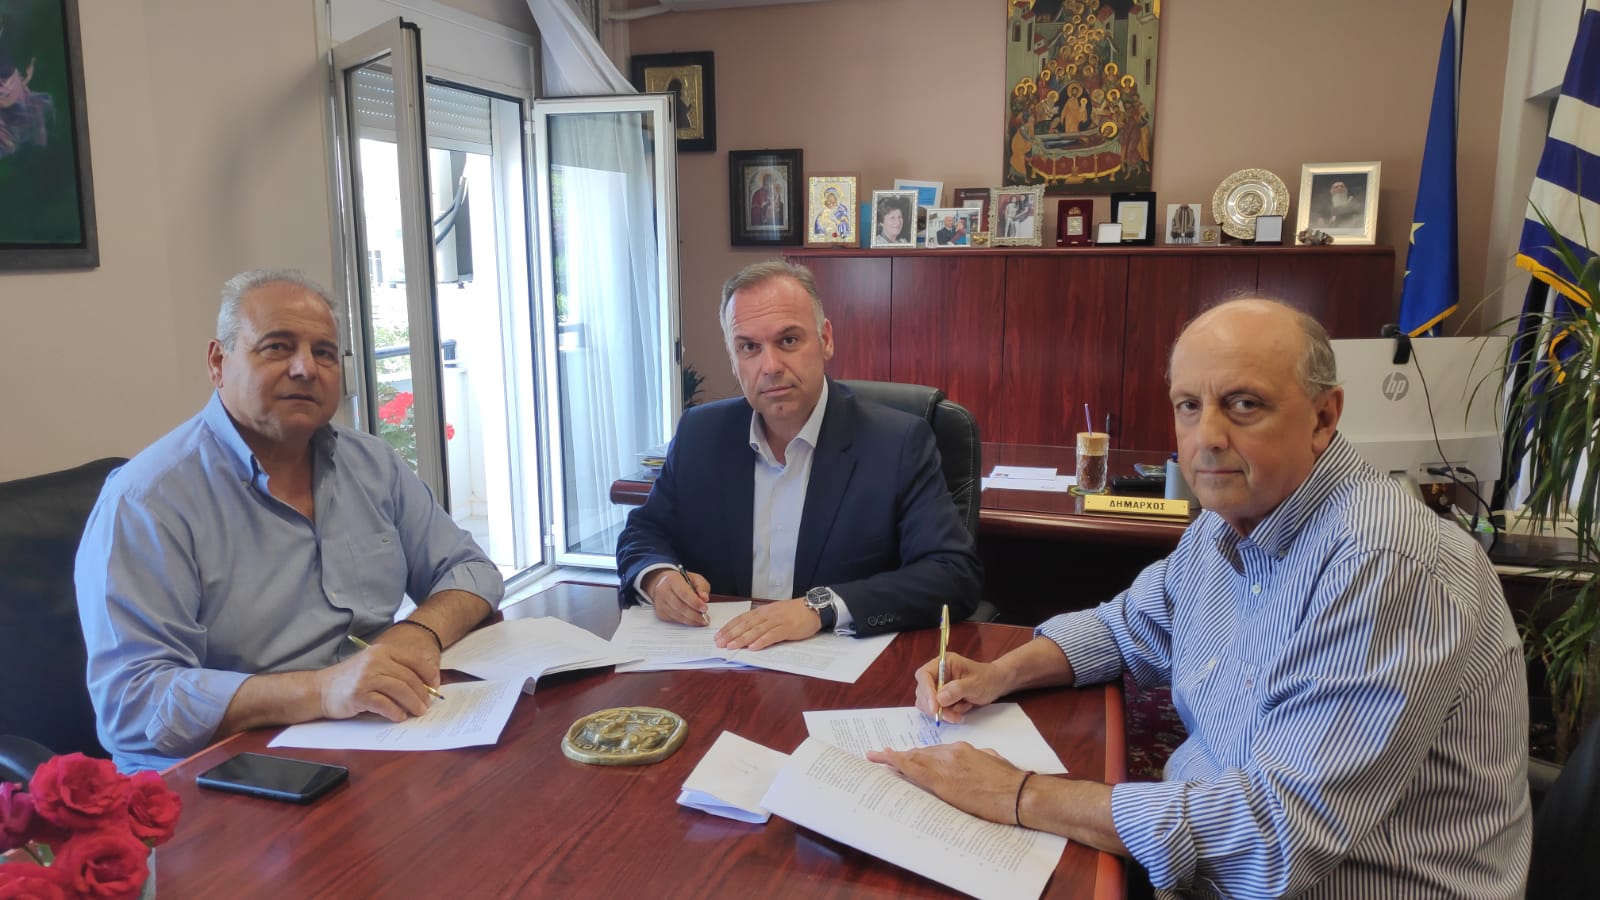  Υπογραφή Σύμβασης του έργου: “Αποχέτευση ακαθάρτων οικισμών Σκάλας Καλλιράχης, Σκάλας Σωτήρος”